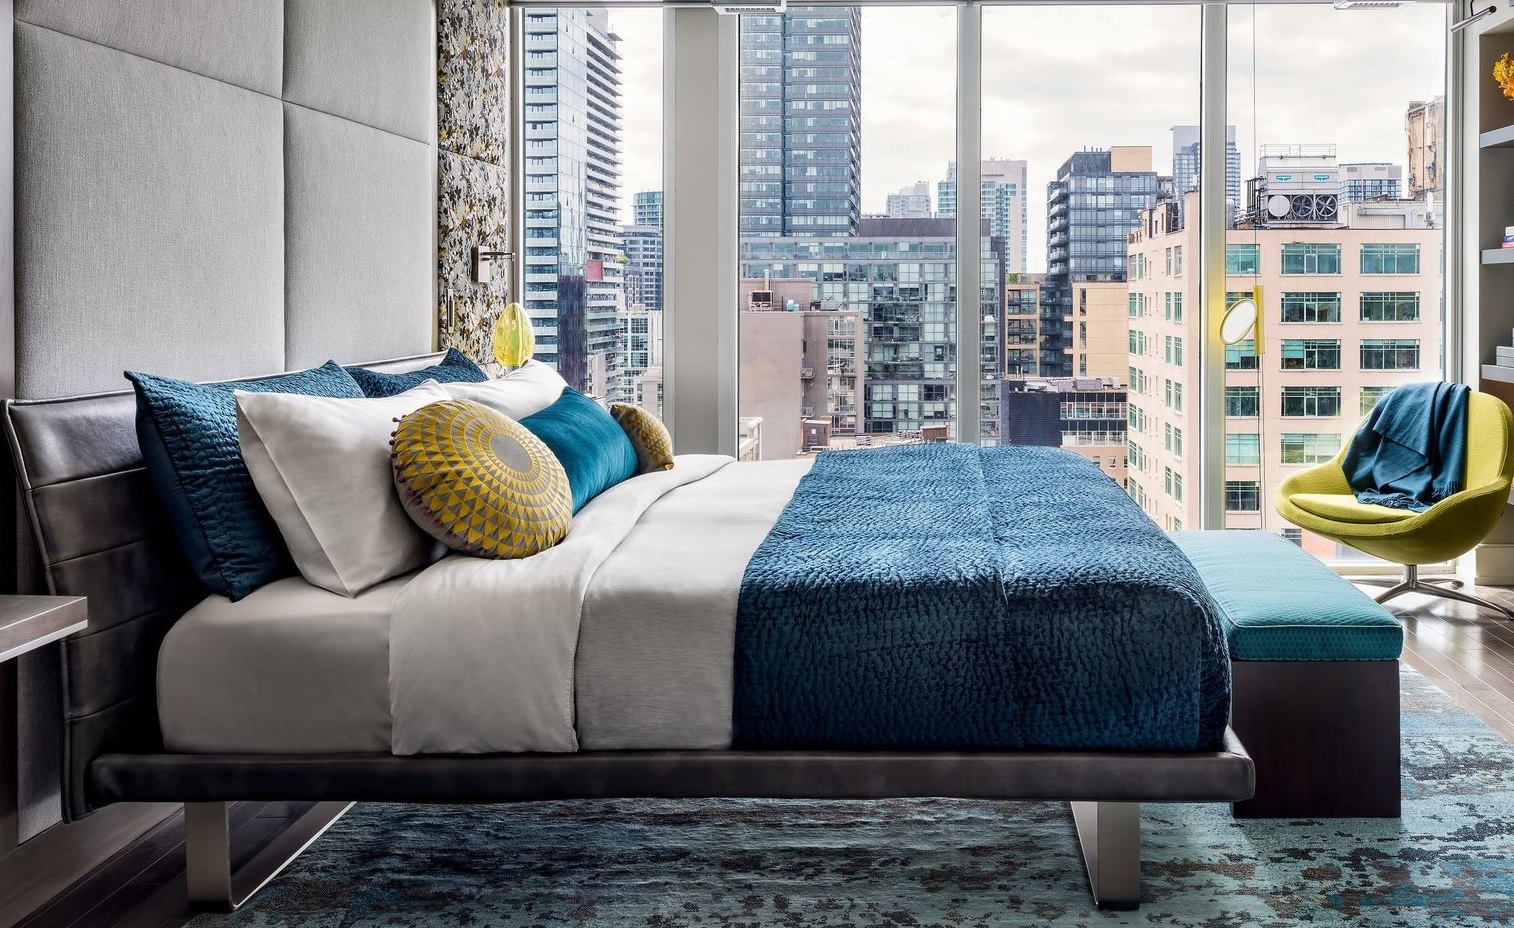 Phòng ngủ với thiết kế tường kính trong suốt nhìn ra khung cảnh nhộn nhịp của Toronto (Canada). Sheree Stuart Design Studio đã kết hợp kiểu giường thấp sàn với khung thép bọc da cực kỳ sang chảnh, phù hợp với phong cách hiện đại tổng thể.